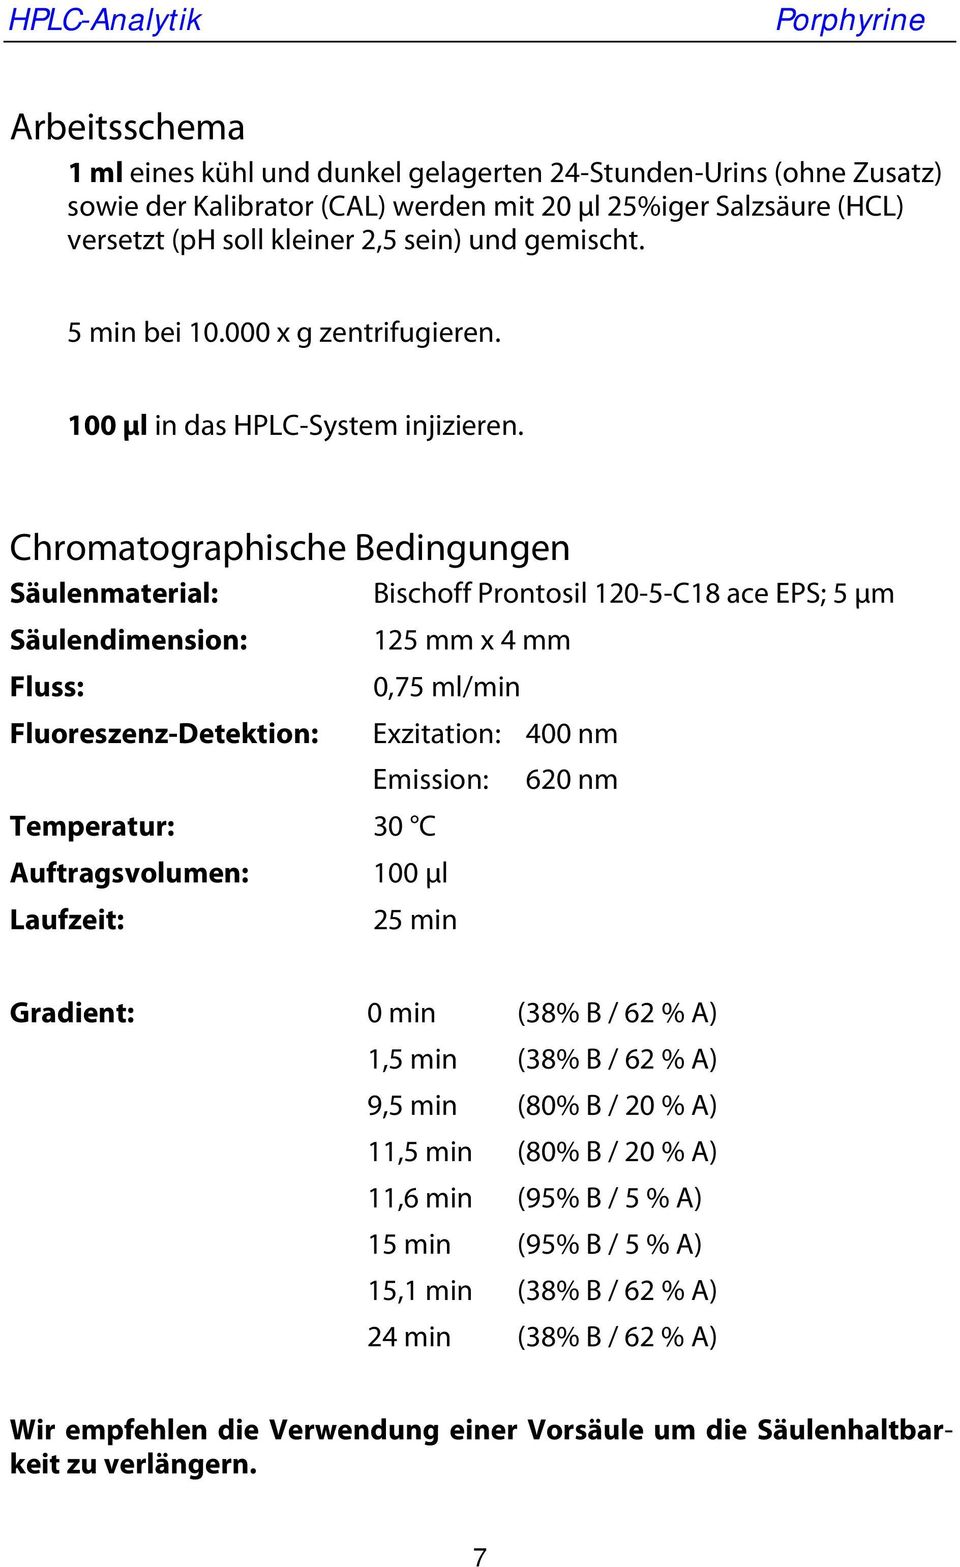 Chromatographische Bedingungen Säulenmaterial: Bischoff Prontosil 120-5-C18 ace EPS; 5 μm Säulendimension: 125 mm x 4 mm Fluss: 0,75 ml/min Fluoreszenz-Detektion: Exzitation: 400 nm Emission: 620 nm